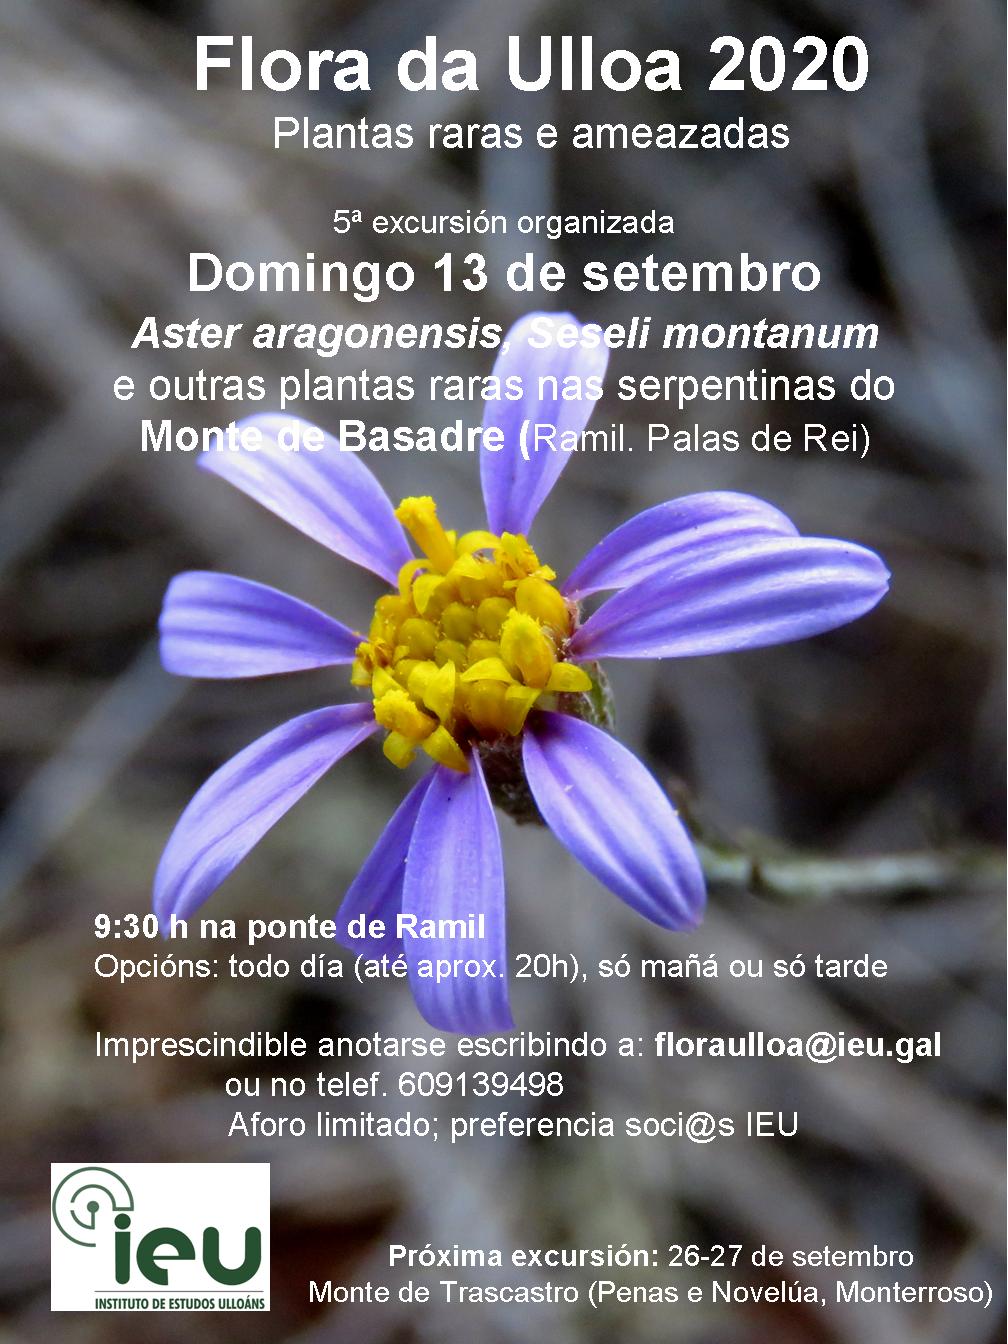 Excursión Flora da Ulloa 05-20 Monte de Basadre, Instituto de Estudos Ulloáns, IEU